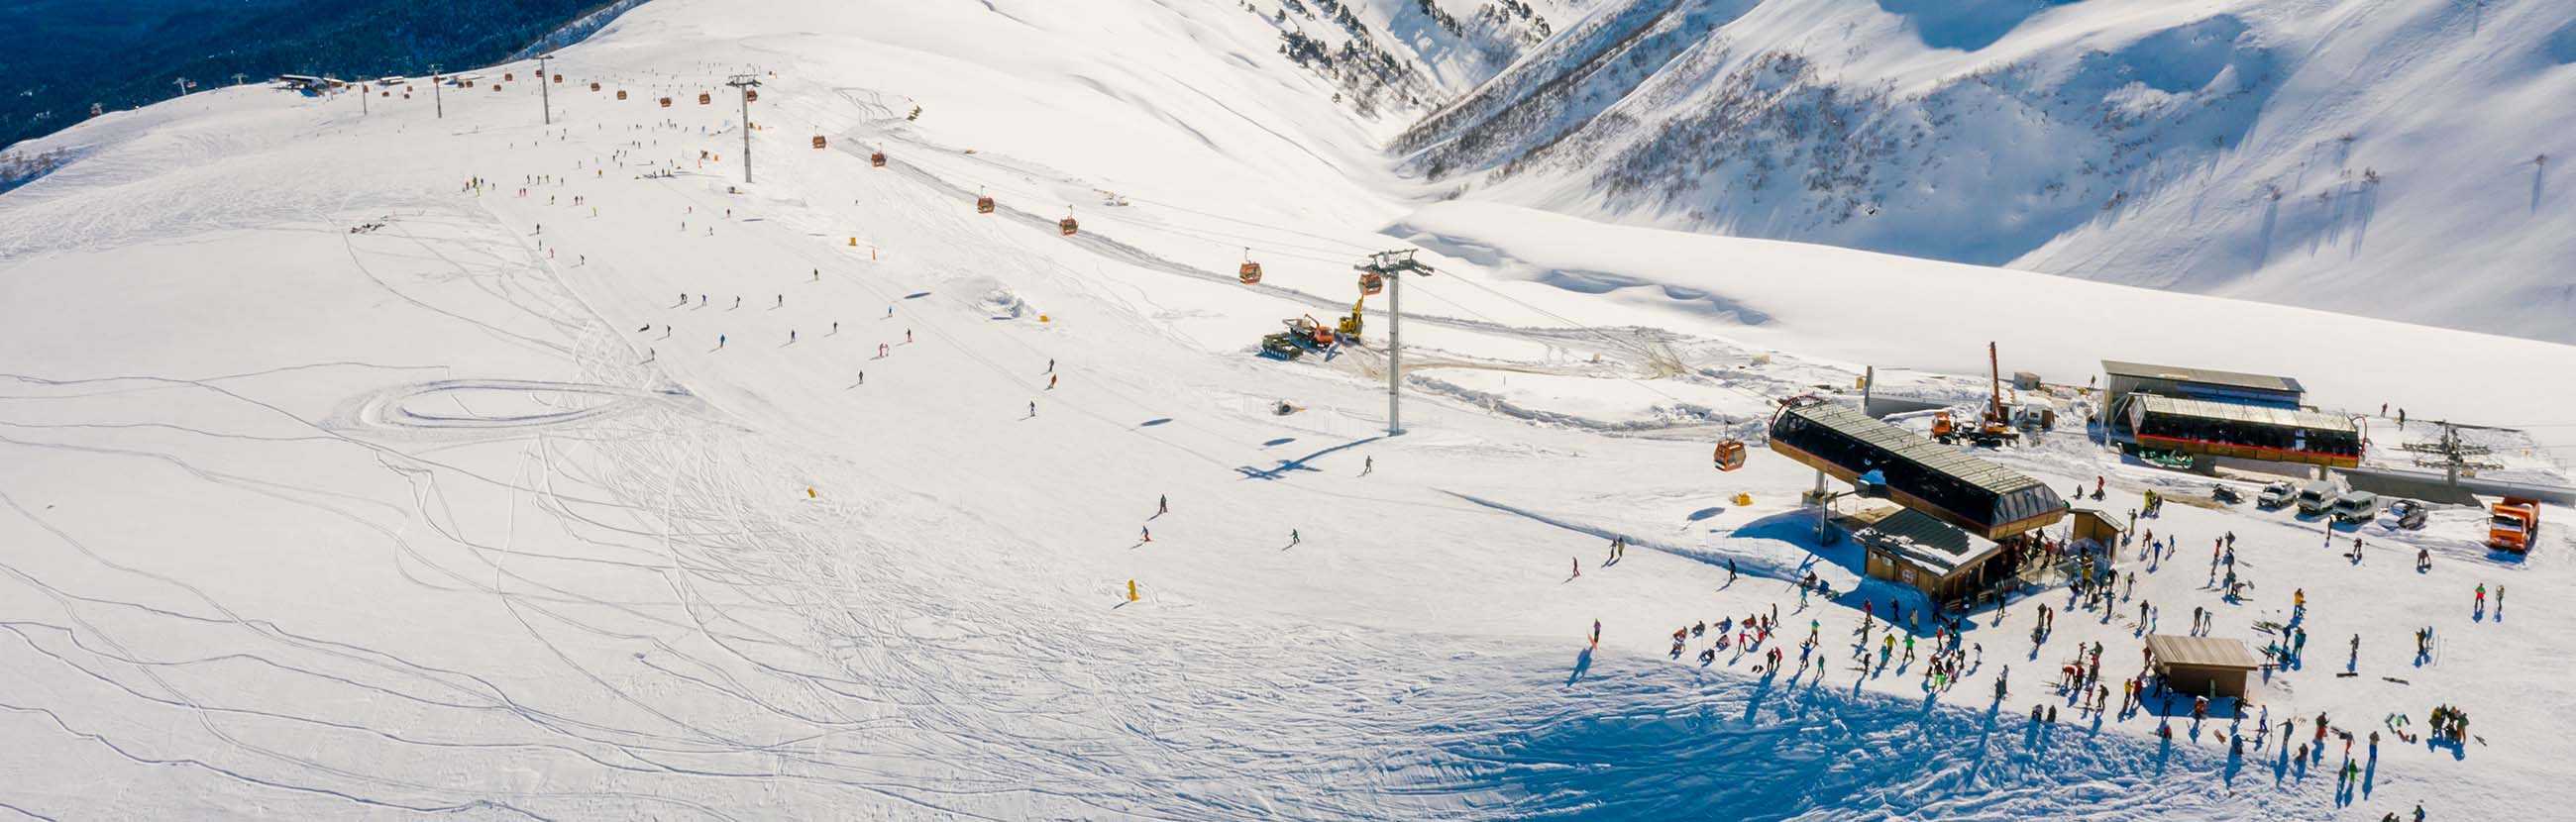 Ружомберок – популярный словацкий горнолыжный курорт Он радует отдыхающих отличным сервисом и уровнем развития инфраструктуры Невероятно красивая природа, снежные шапки гор, масса зимних развлечений ждут здесь иностранных туристов